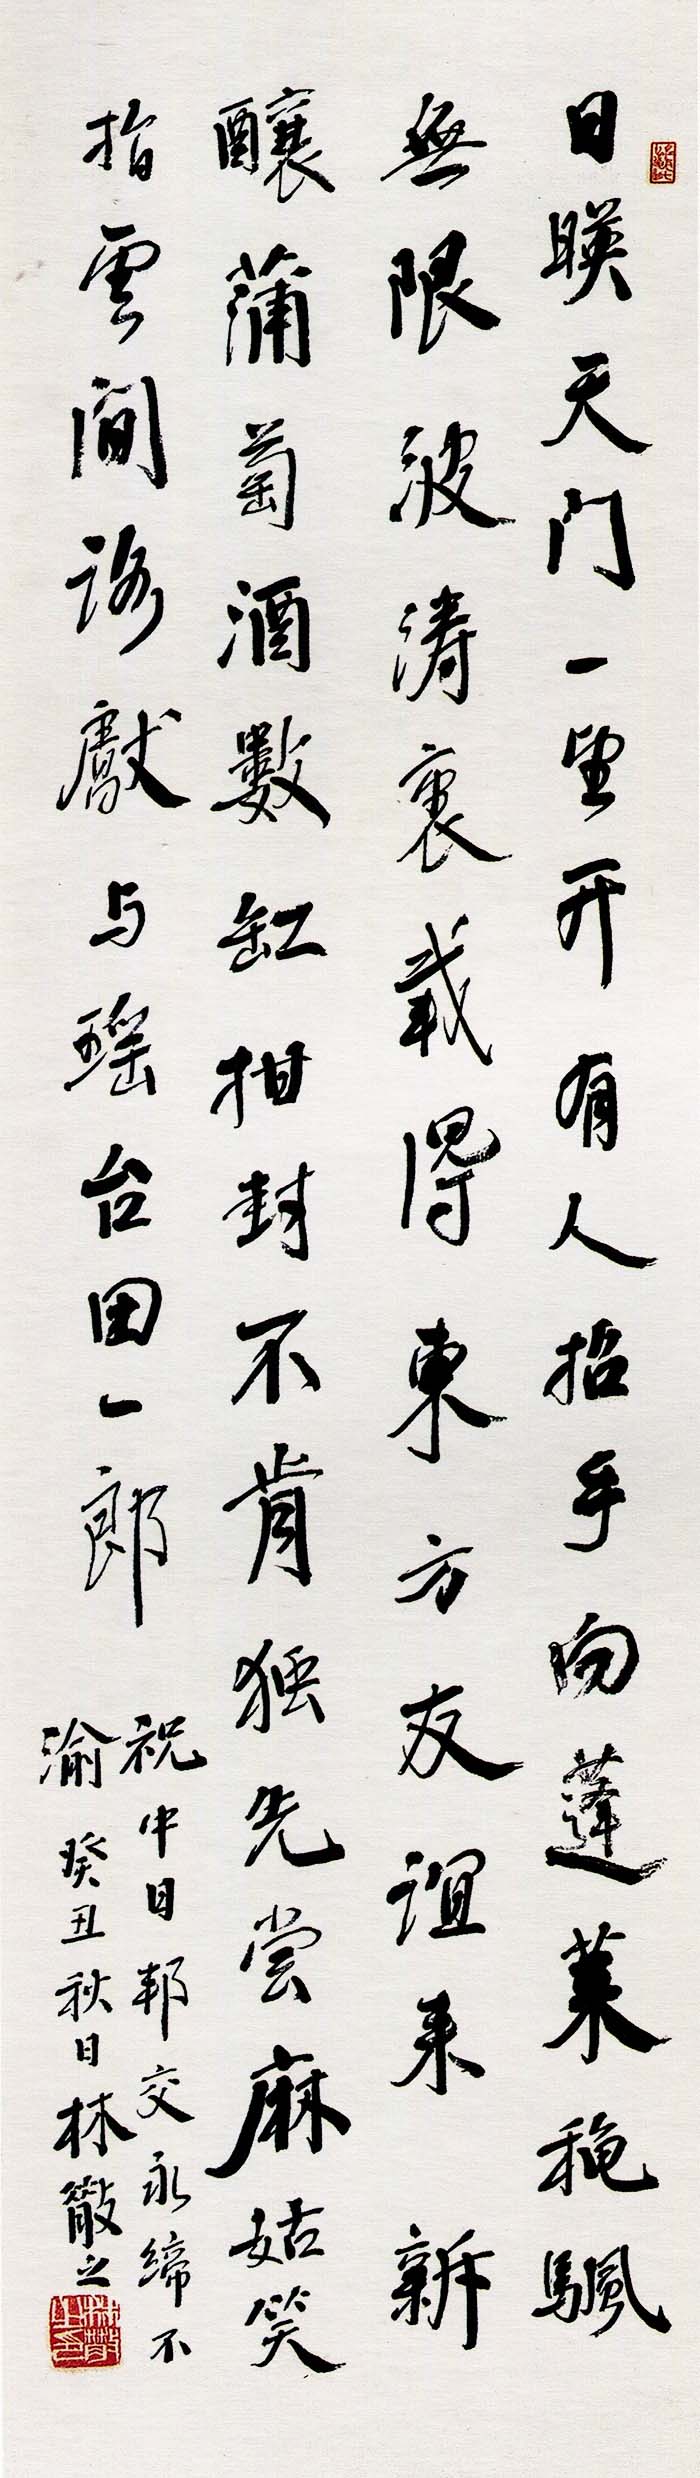 林散之《楷书赠日本诗轴》-马鞍山林散之艺术馆藏。(图1)